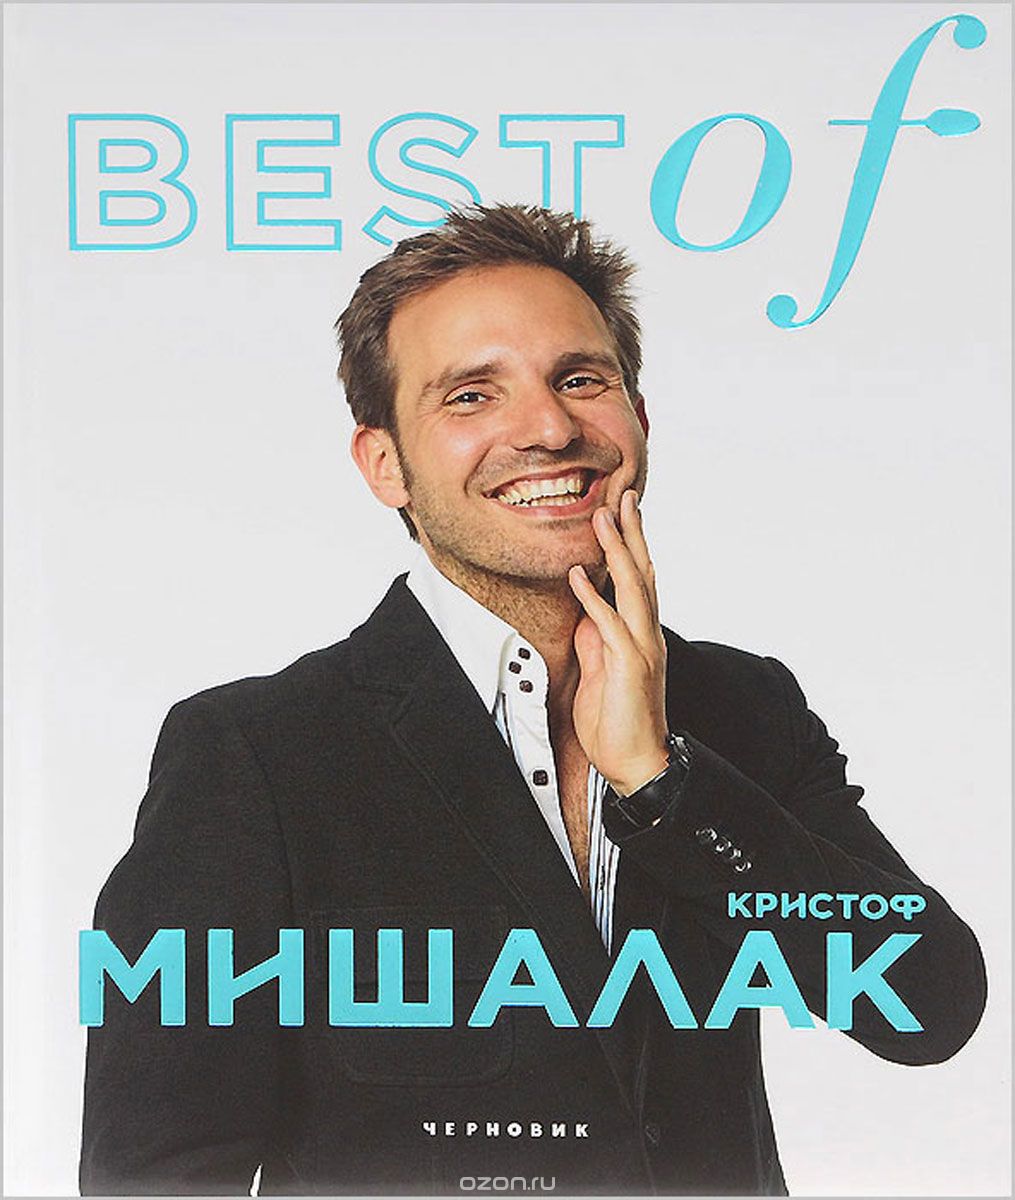 Скачать книгу "BEST of Кристоф Мишалак"